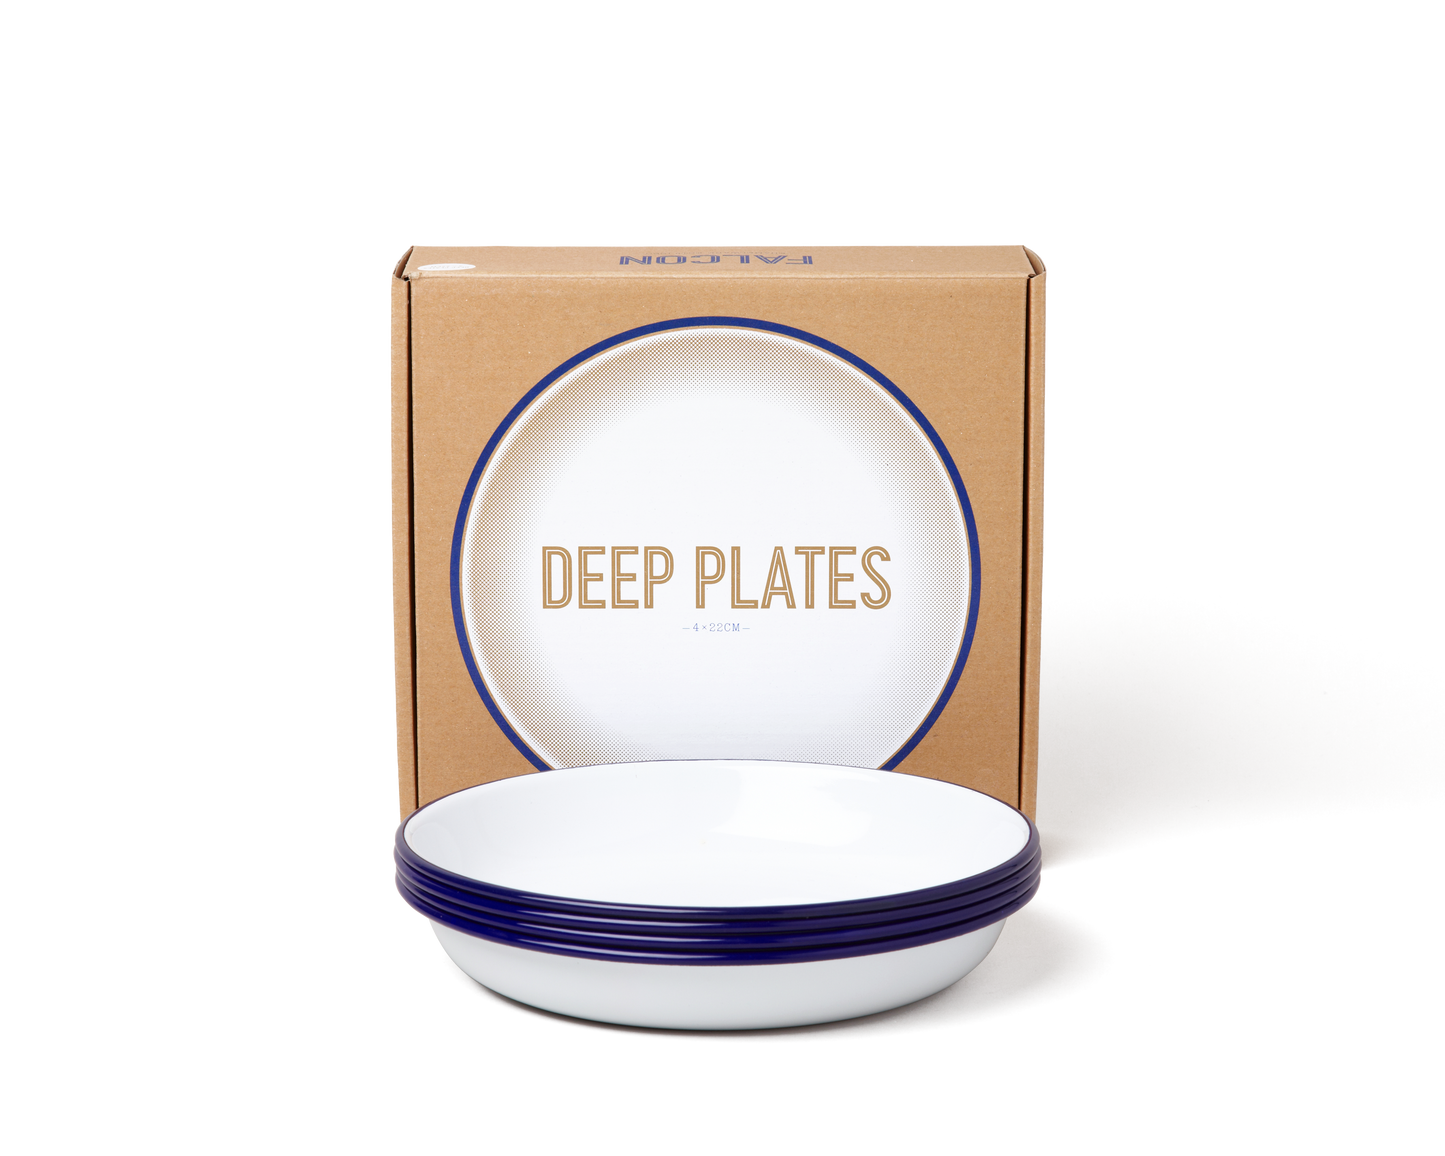 Deep plate set